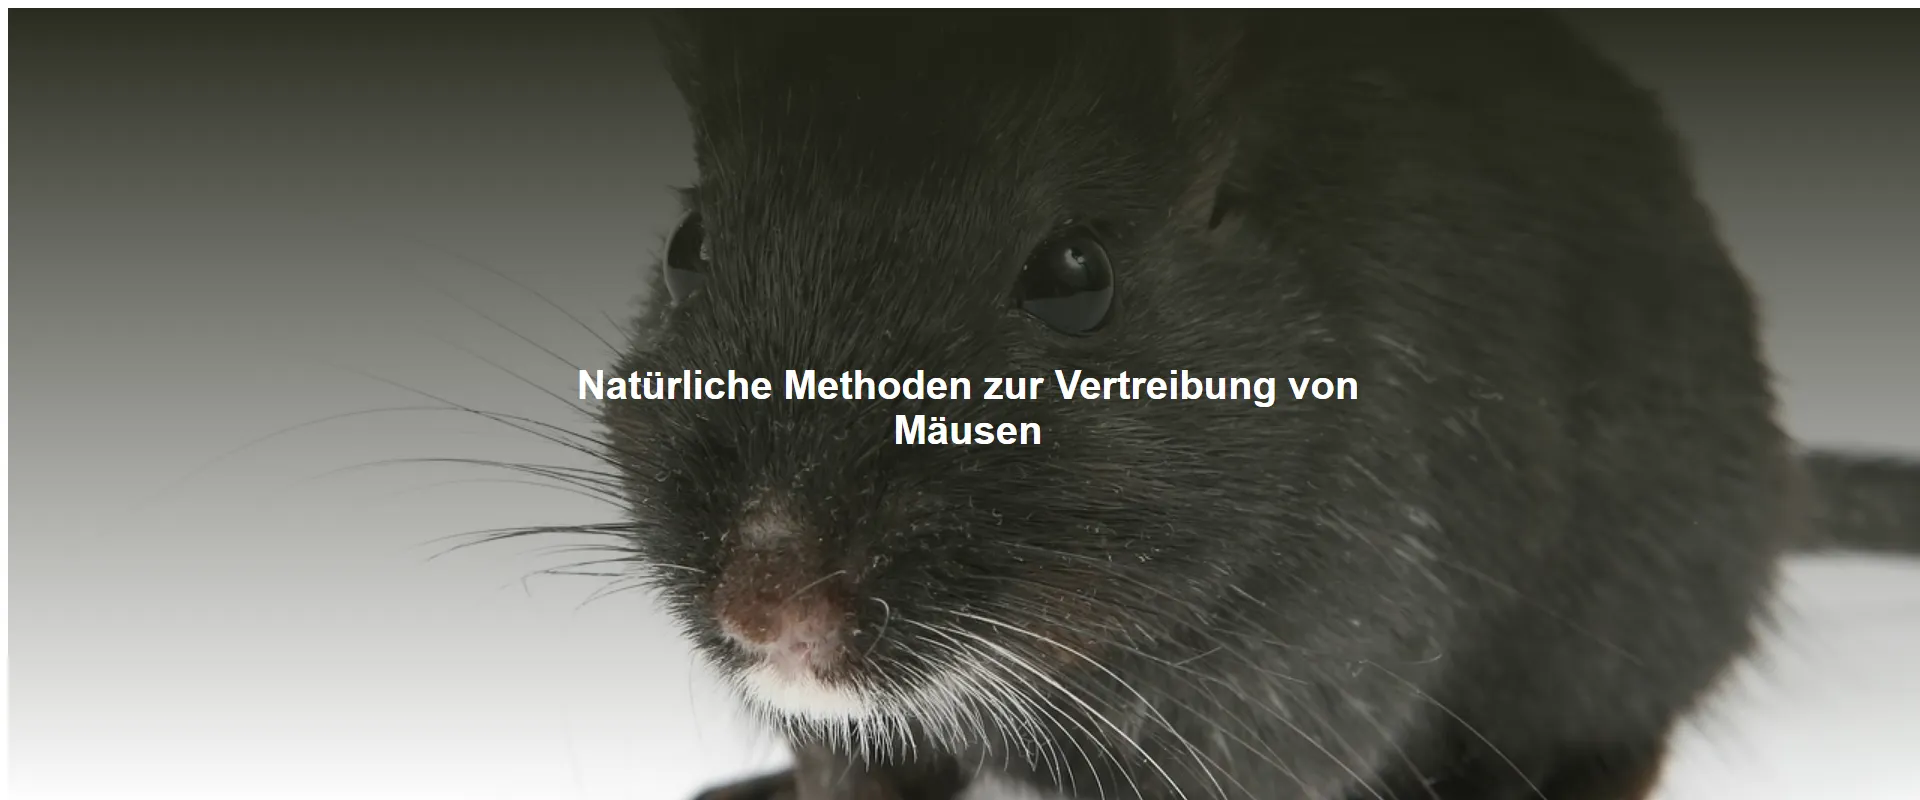 Natürliche Methoden zur Vertreibung von Mäusen